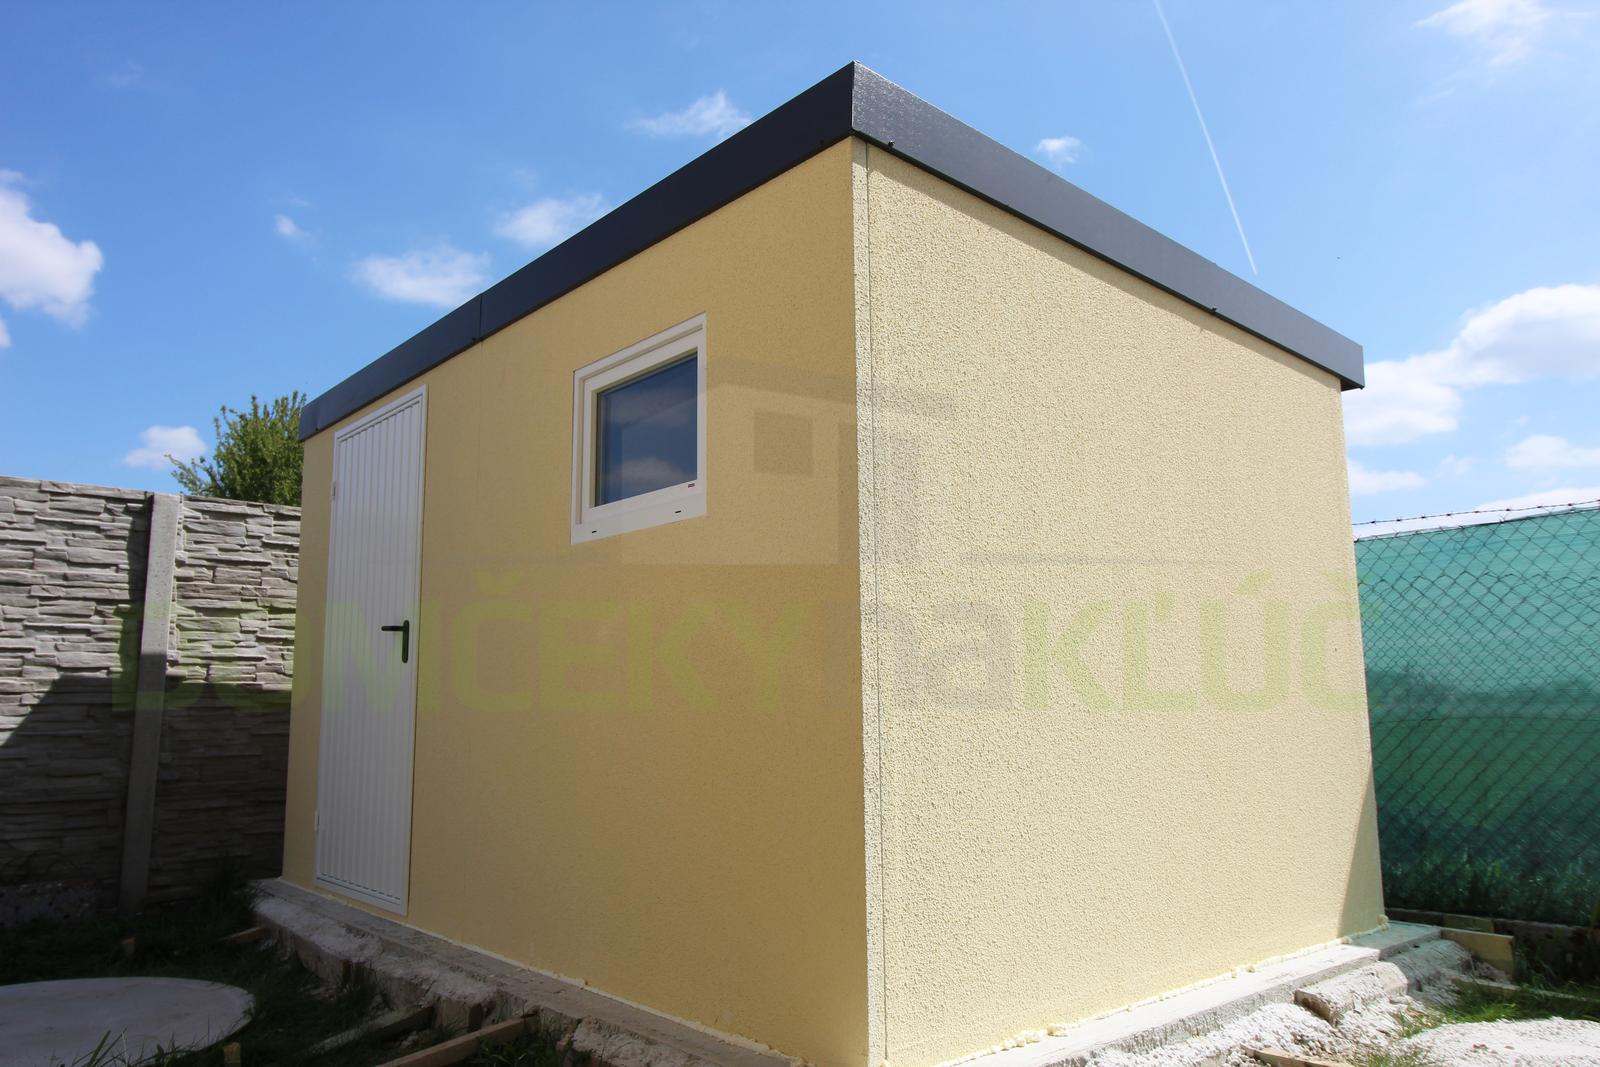 Montované záhradné domčeky GARDEON - Moderný záhhradný domček v žltej omietke s antracitovou strechou